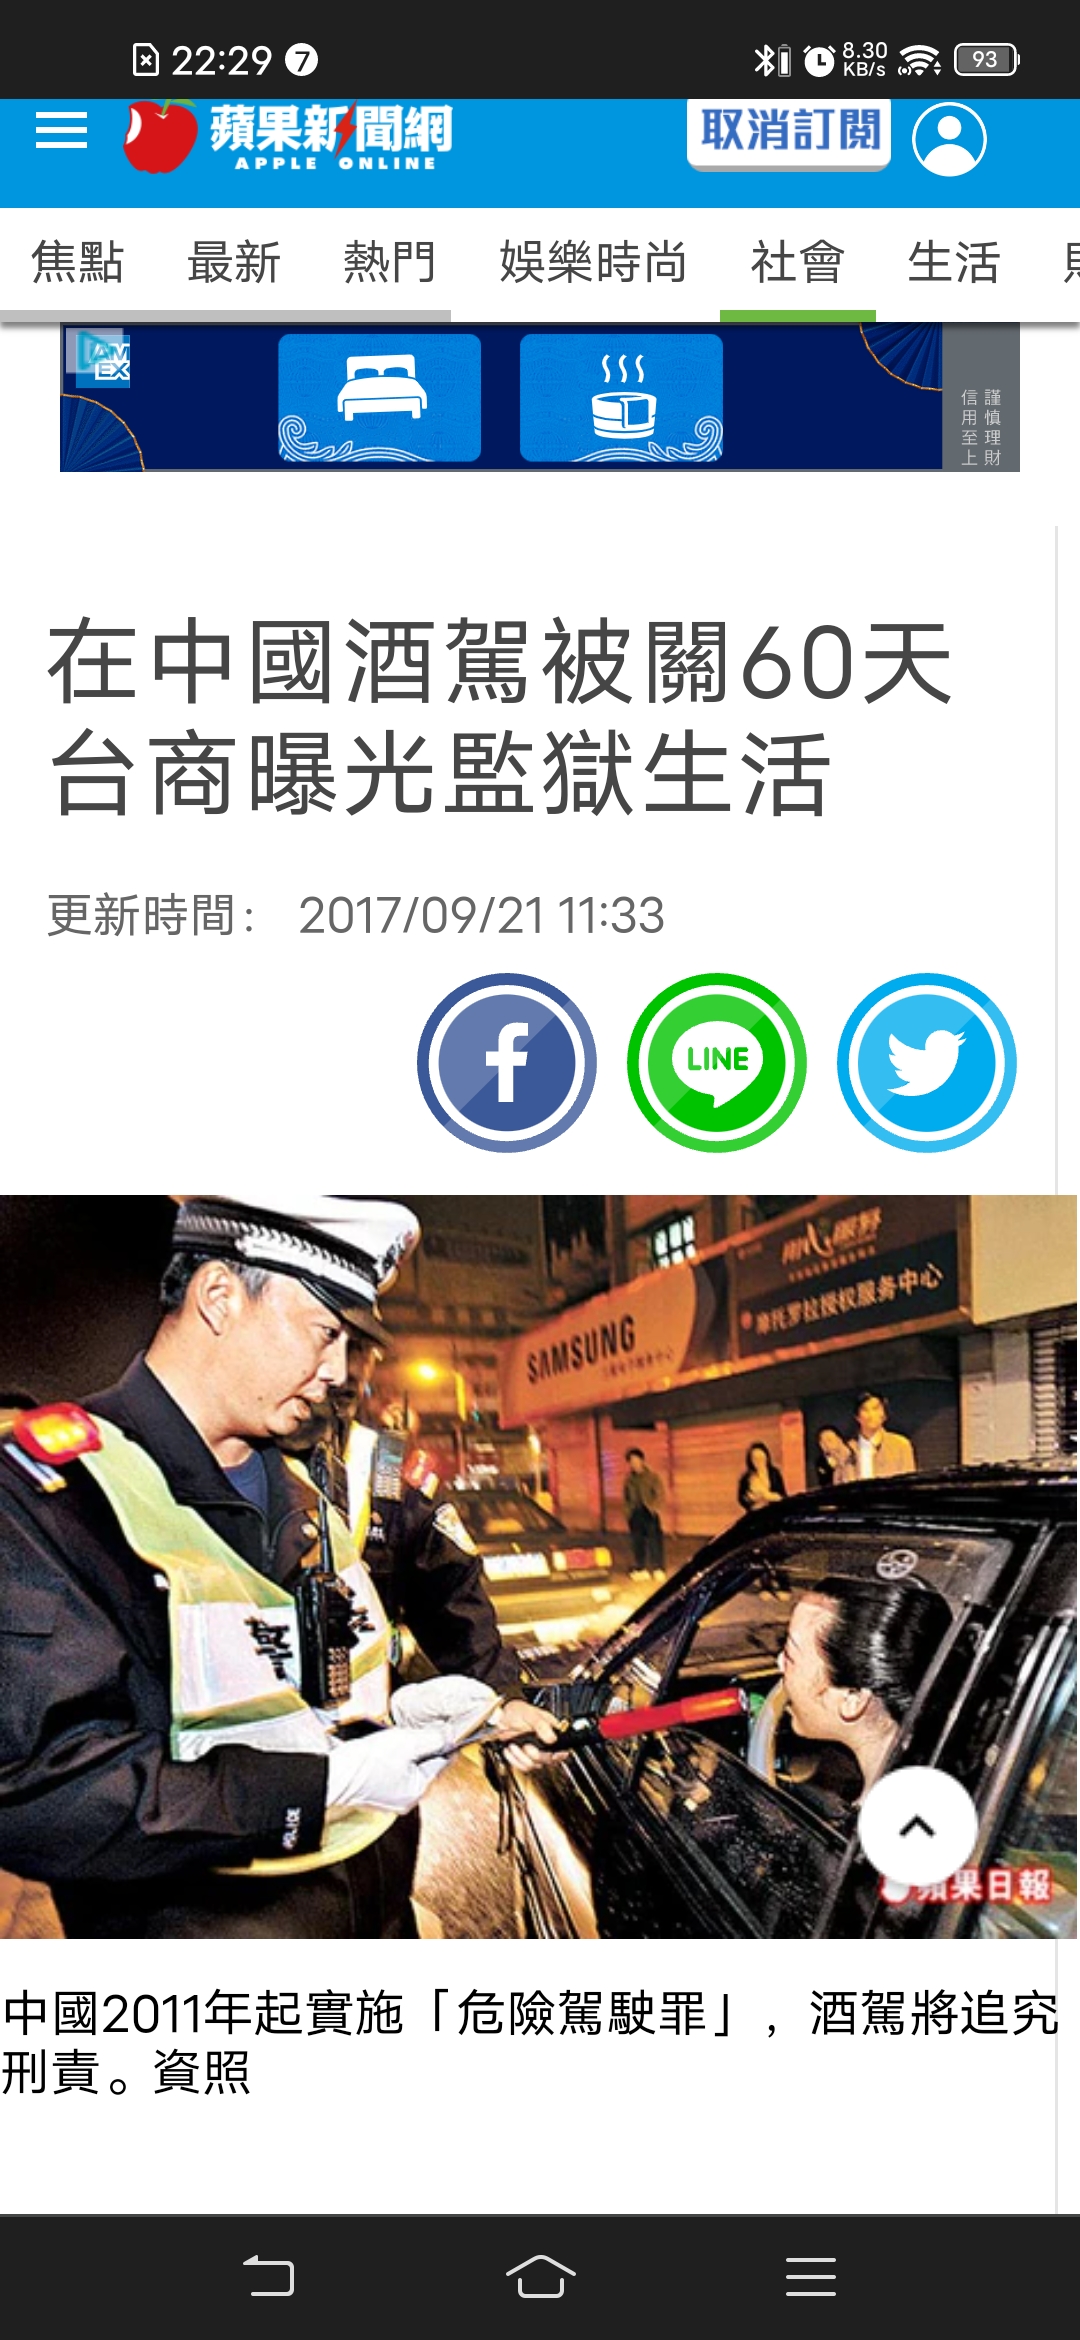 圖https://upload.cc/i4/mpzMG.jpg, 中國人大代表提議取消酒駕罪